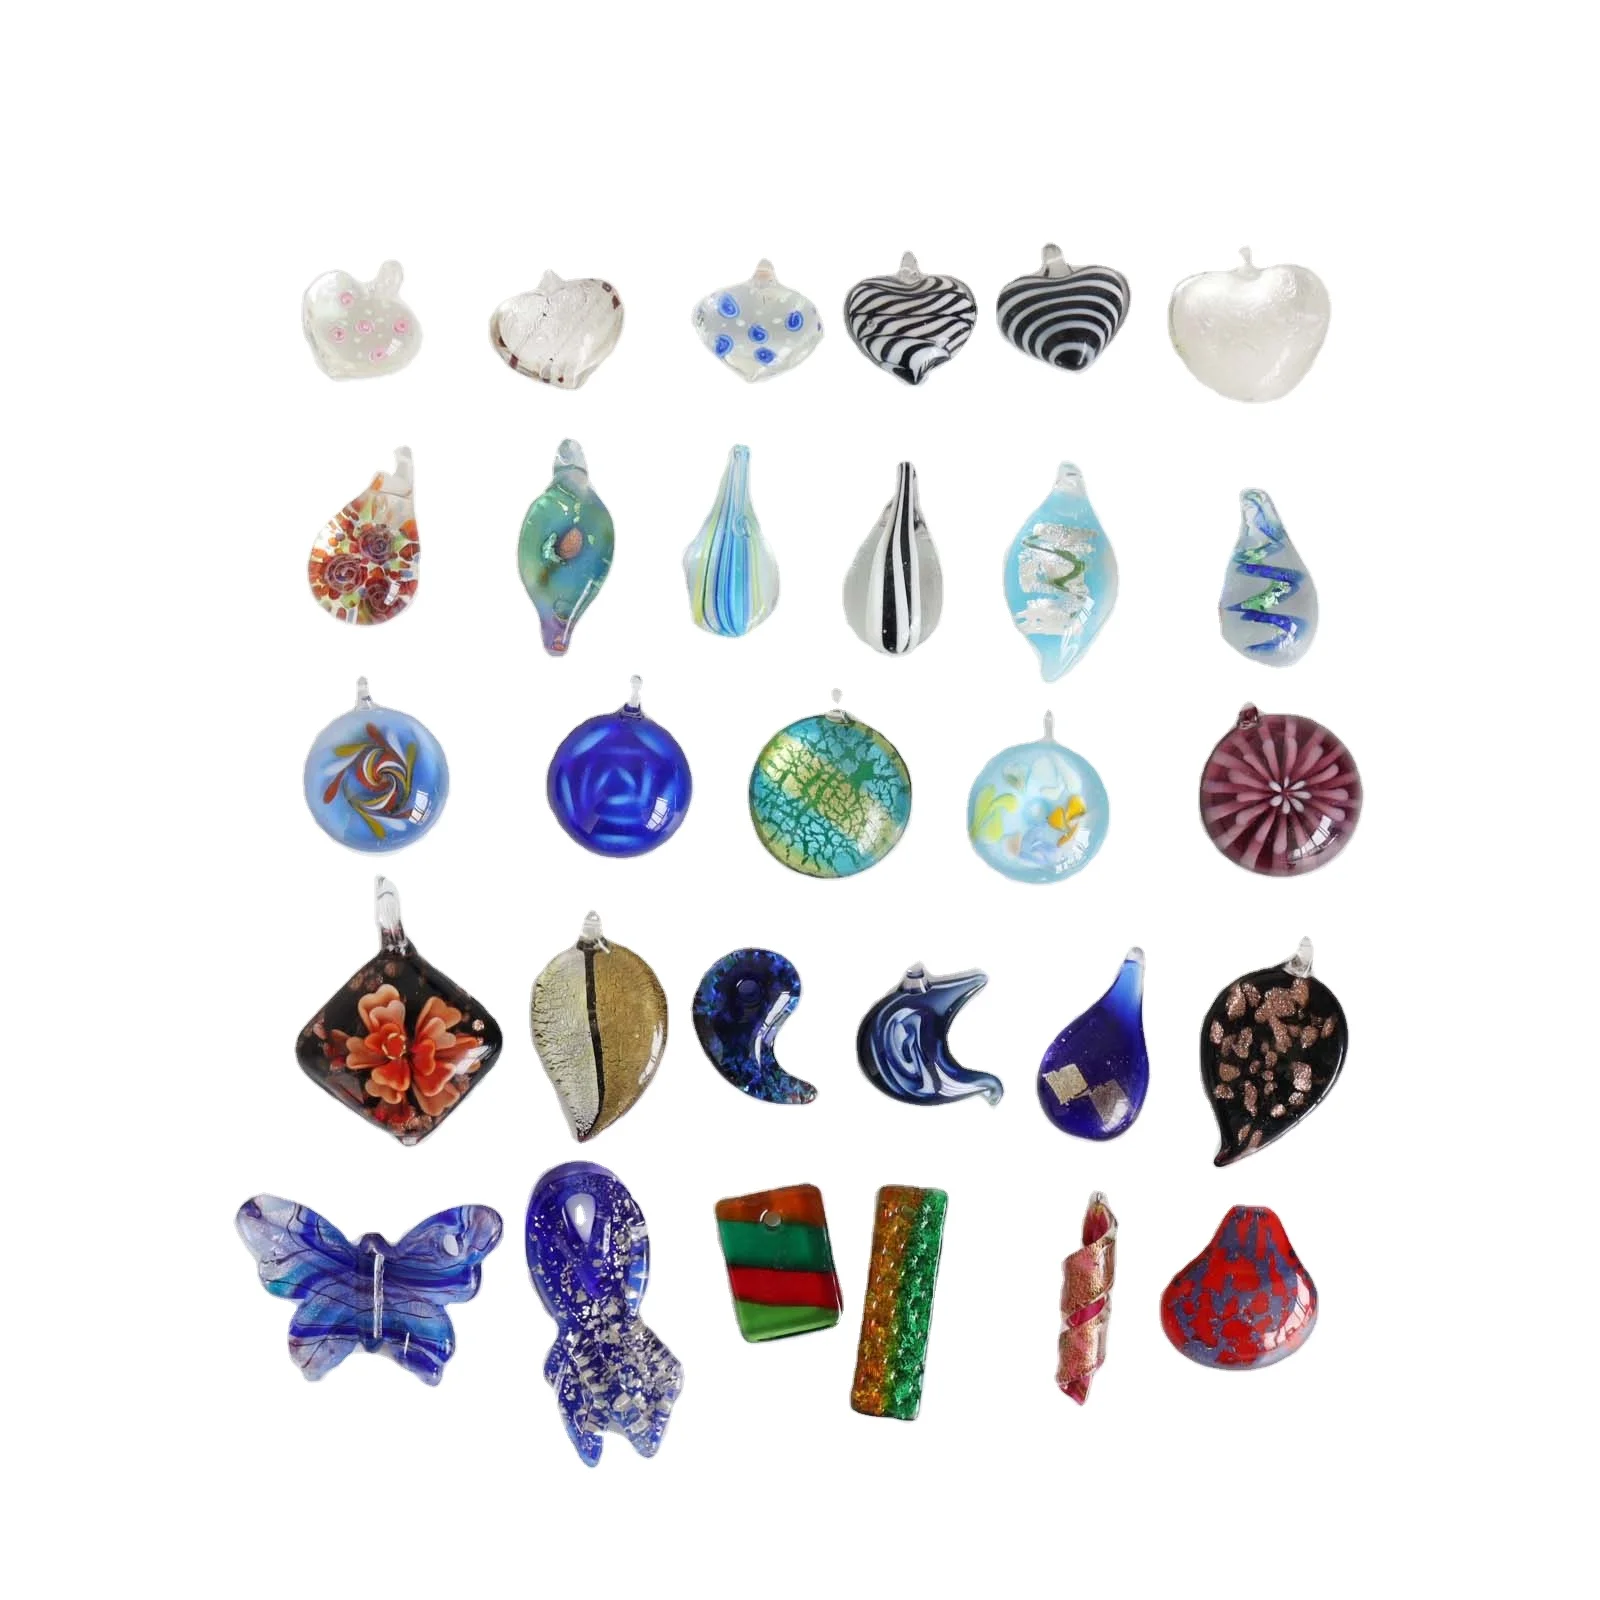 Wholesale de cristal Murano, mezcla de joyas, listo enviar, diy, collar, joyería From m.alibaba.com